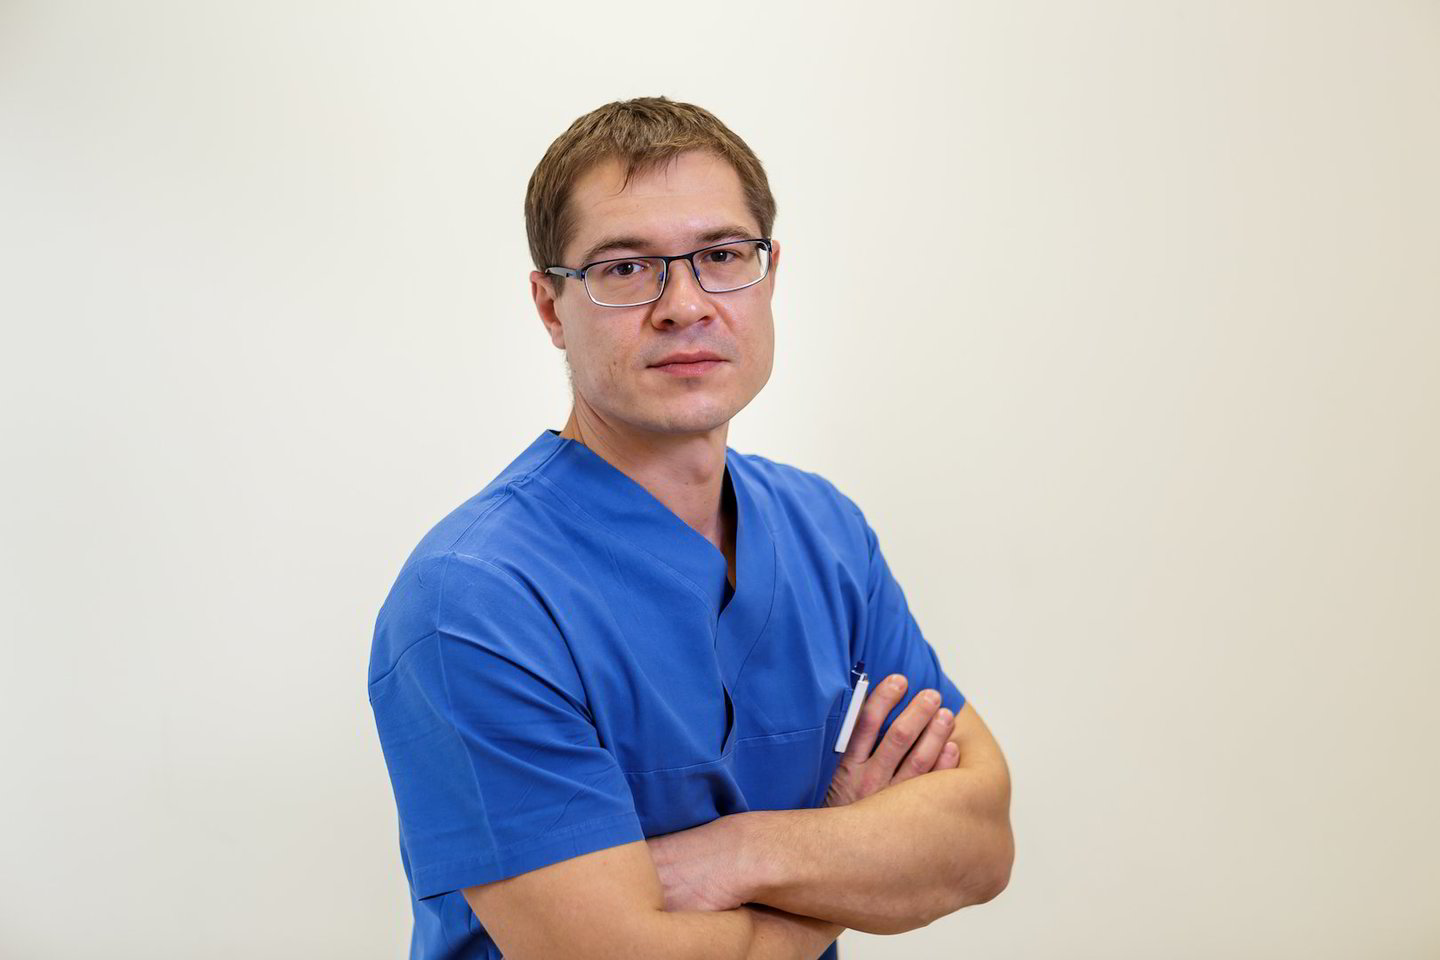  Klaipėdos universitetinės ligoninės ortopedas-traumatologas dr. Algimantas Čebatorius.